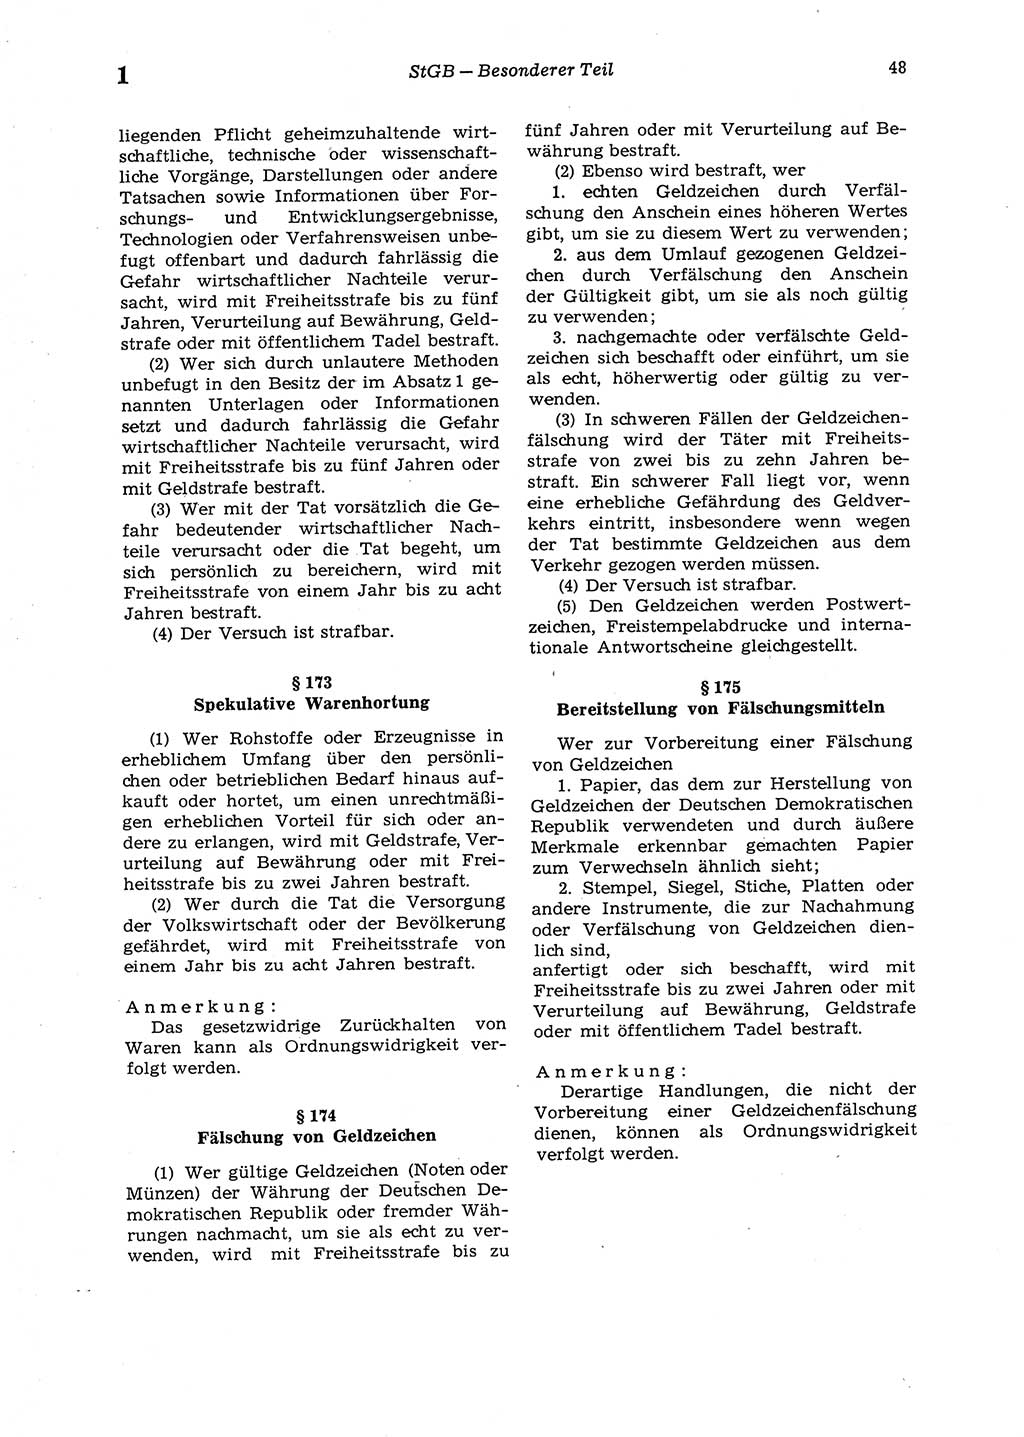 Strafgesetzbuch (StGB) der Deutschen Demokratischen Republik (DDR) 1987, Seite 48 (StGB DDR 1987, S. 48)